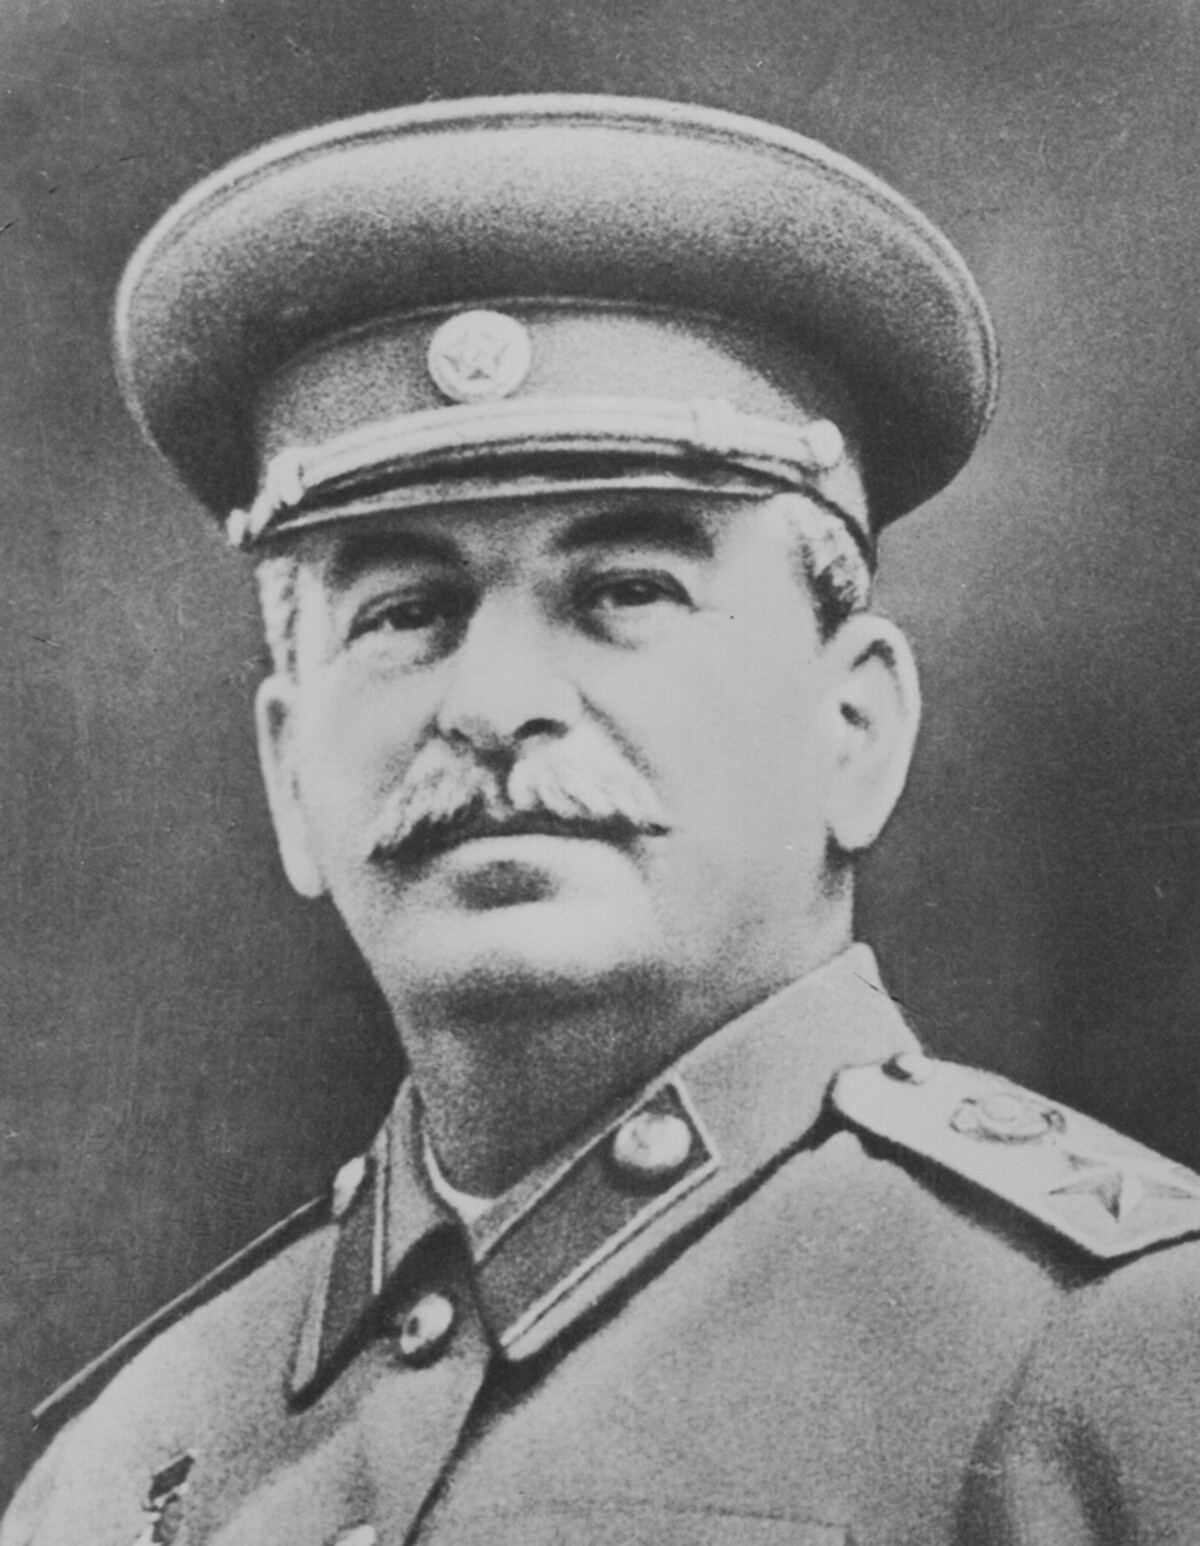 Josif Vissarionovič Stalin bol od roku 1922 prvým generálnym tajomníkom Ústredného výboru Komunistickej strany Sovietskeho zväzu. Vládol až do svojej smrti v roku 1953.